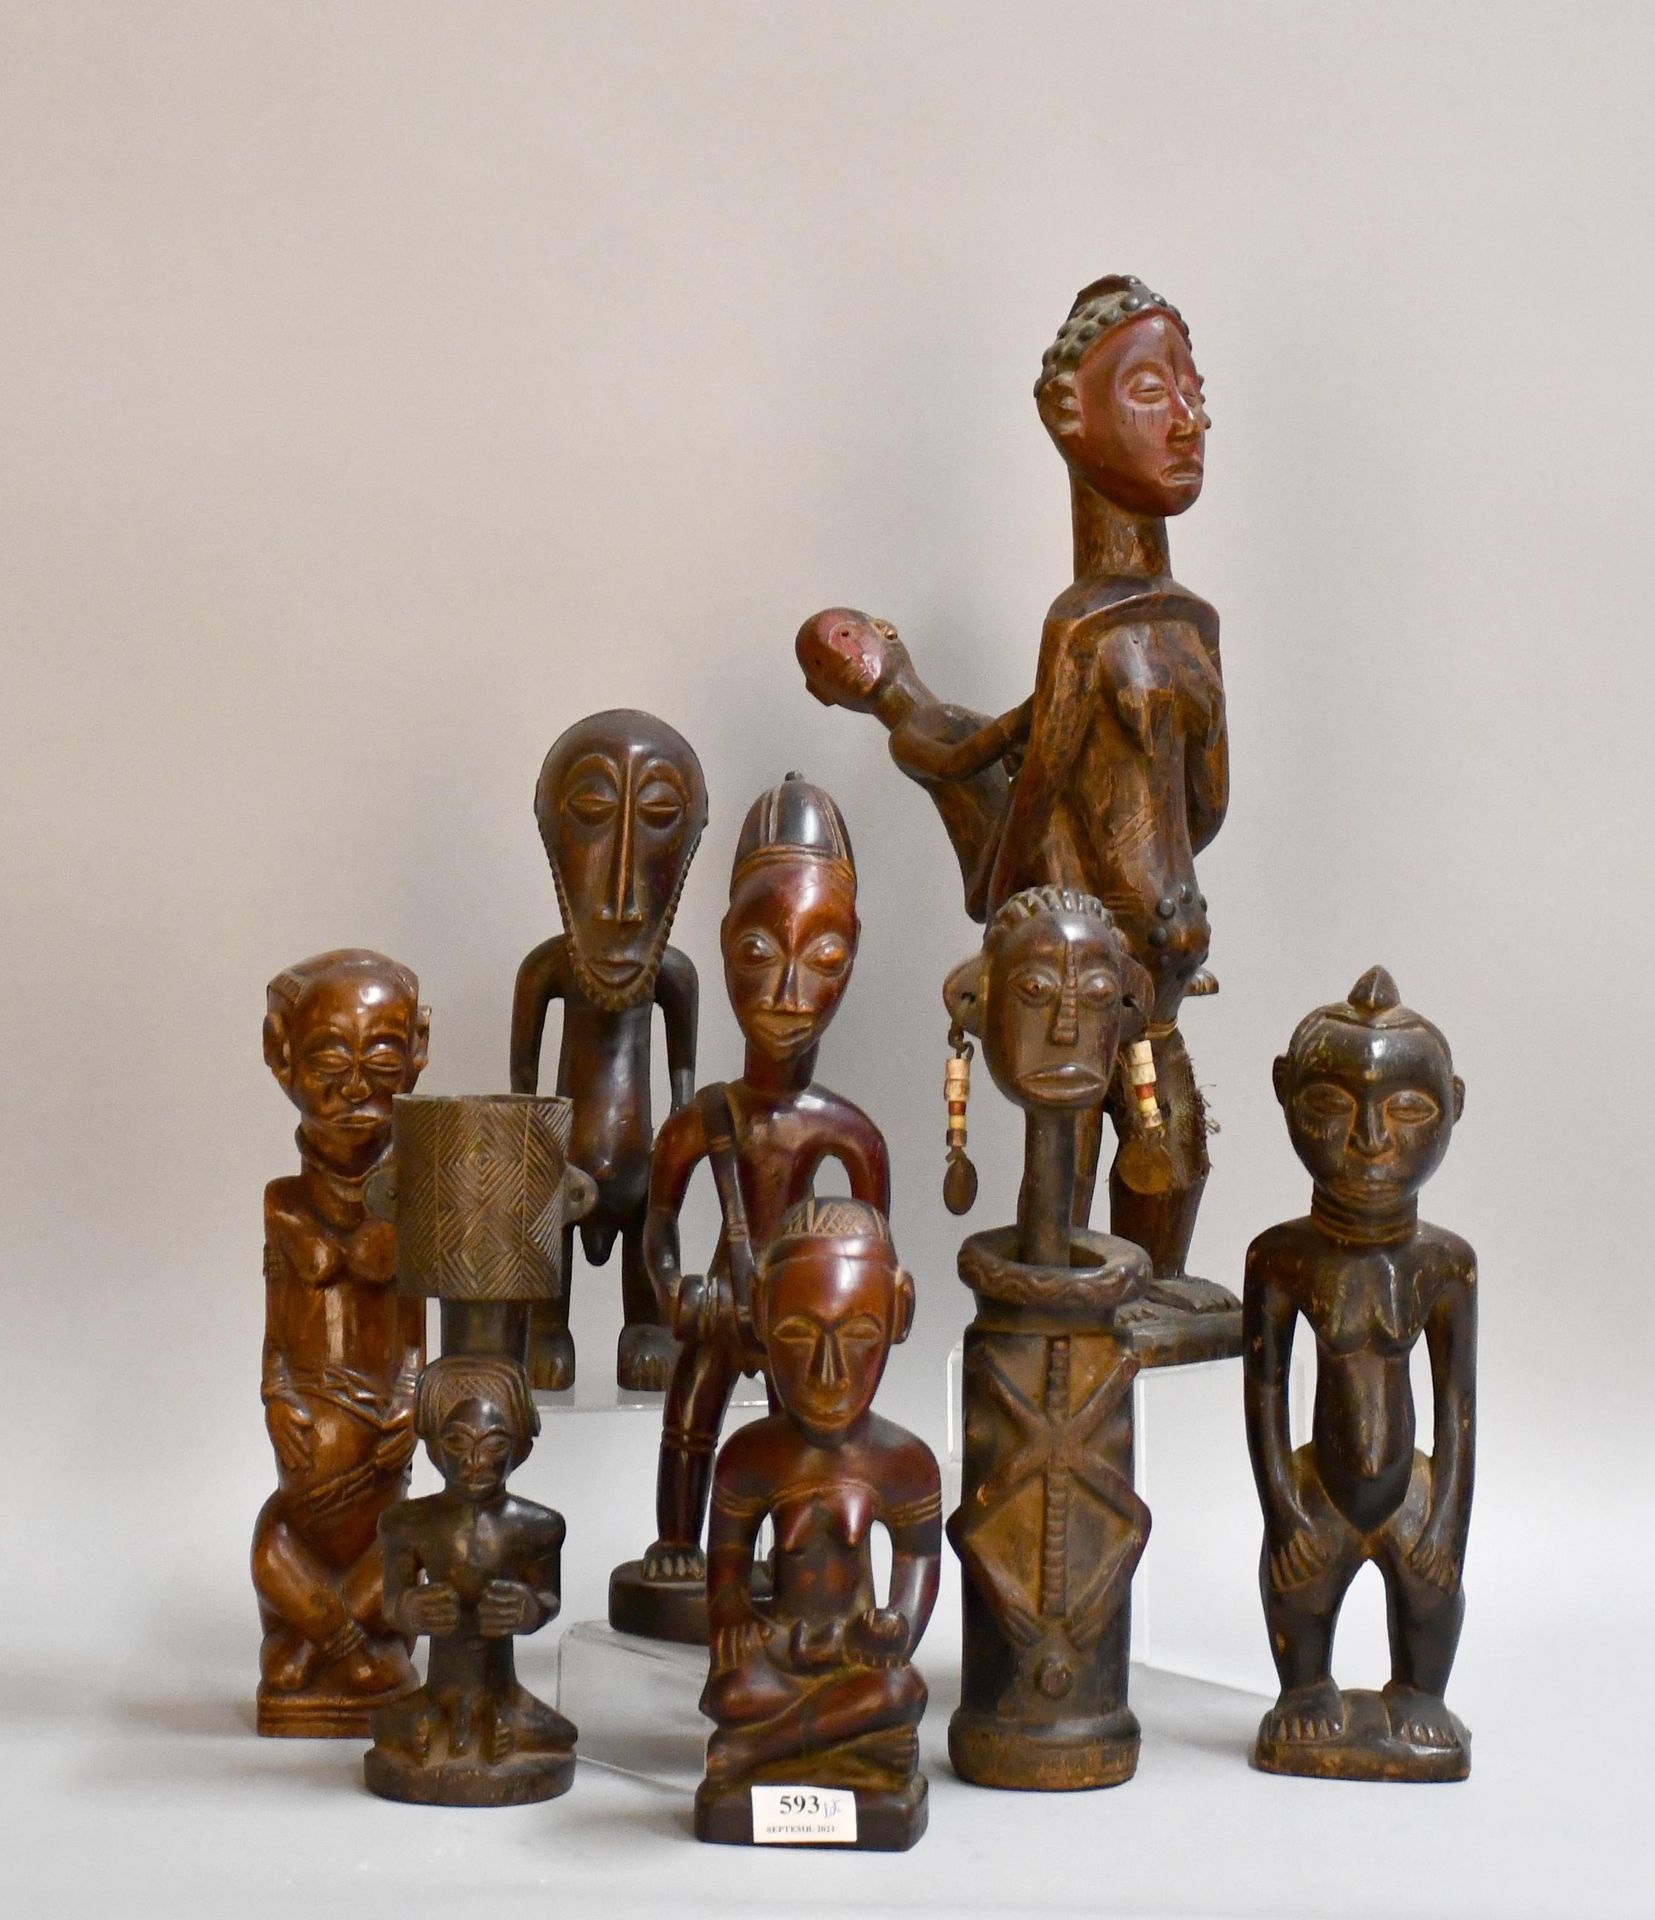 Null Africana

Lot de fétiches africains en bois sculpté.